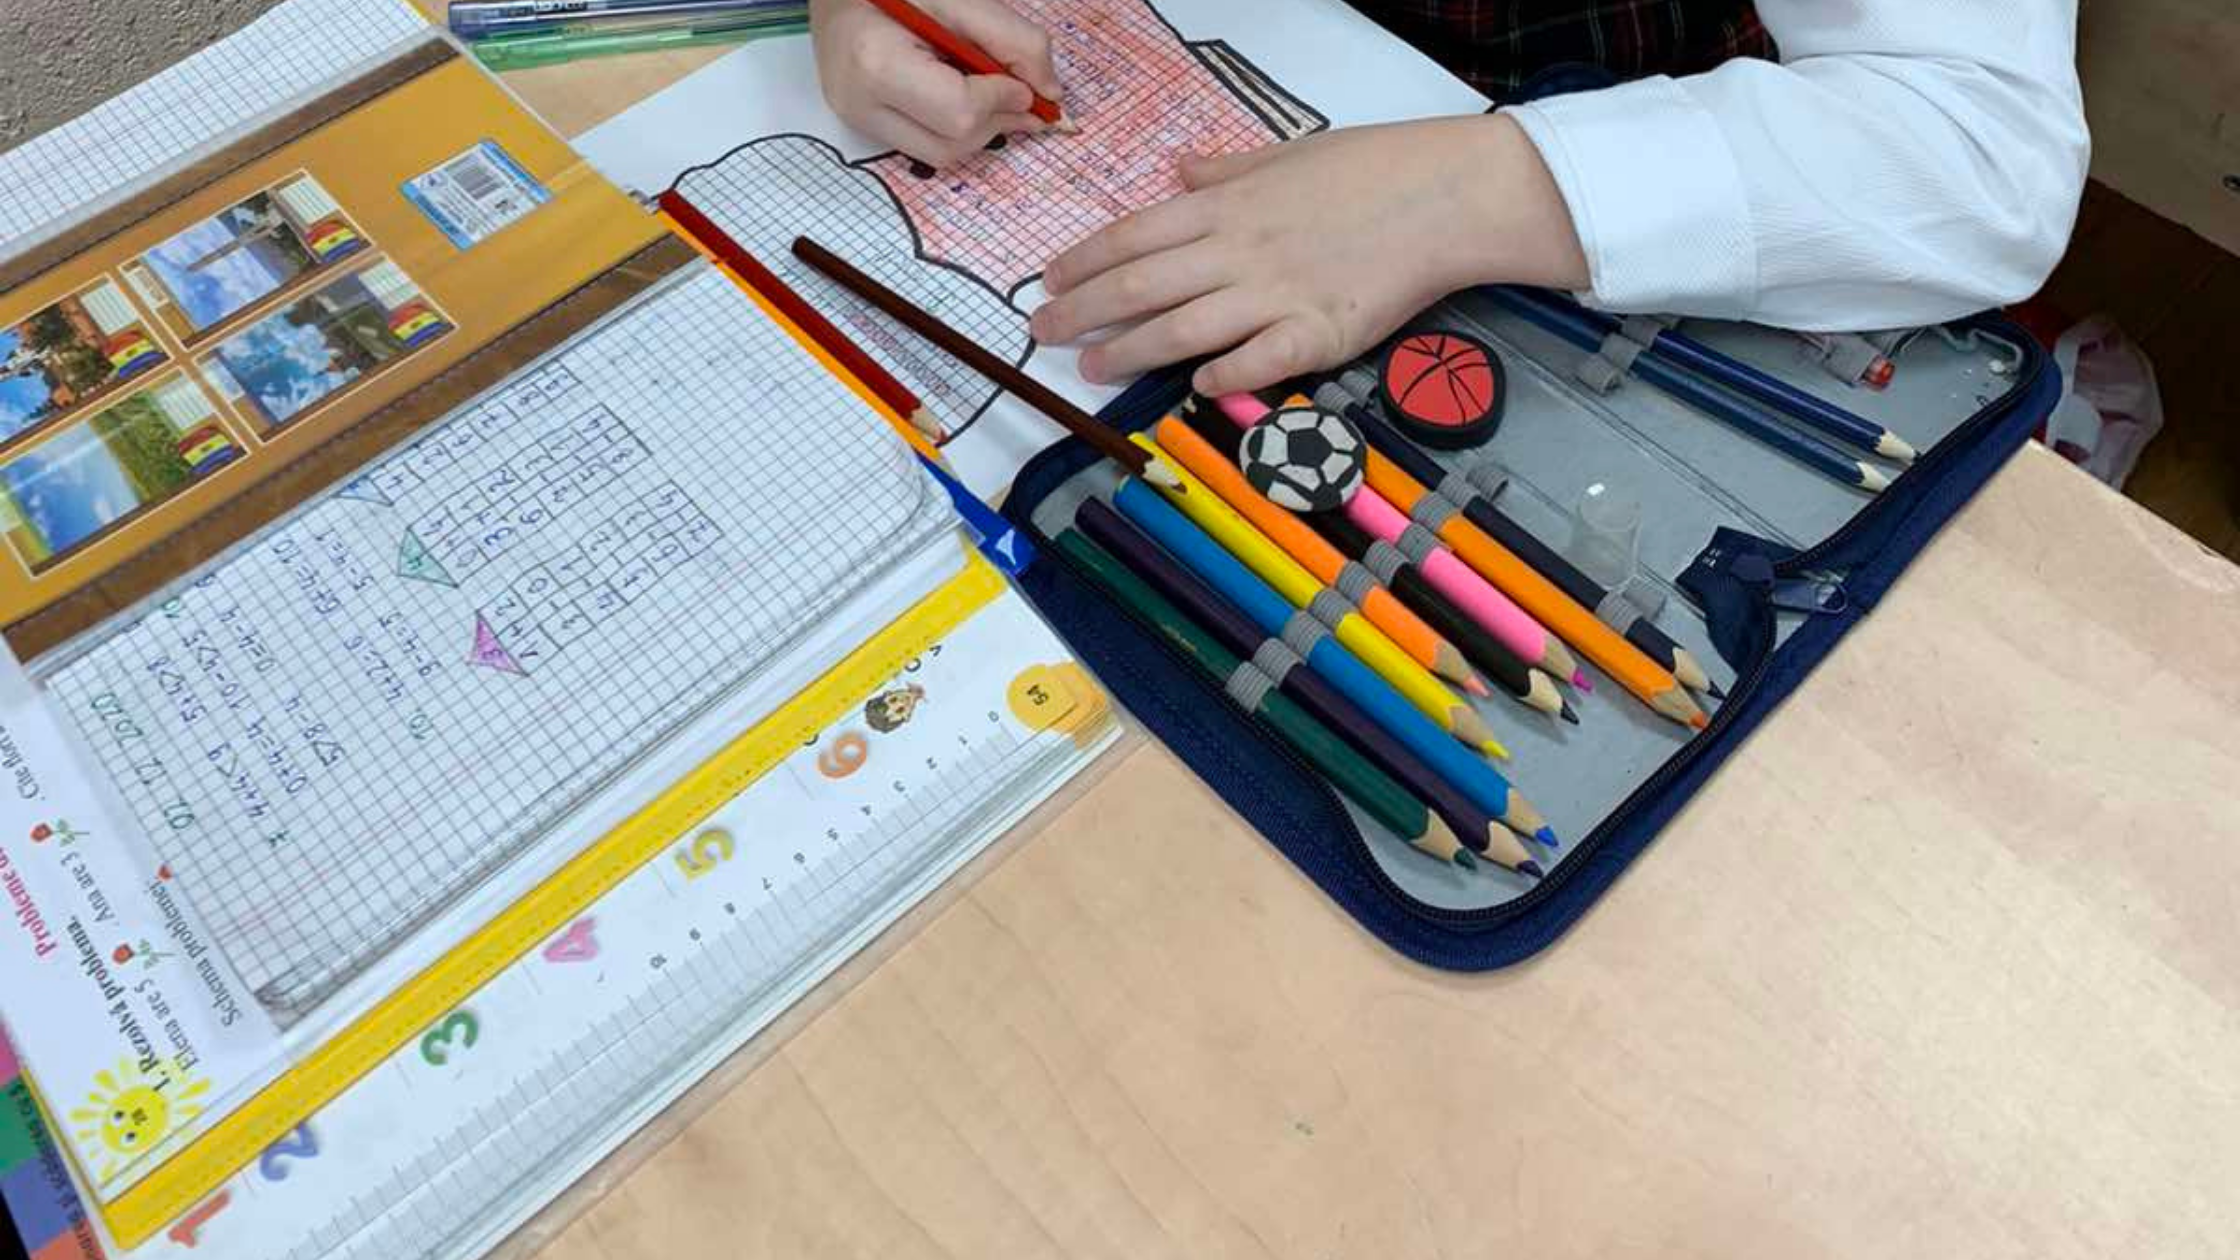 Fundația Regina Pacis colectează rechizite școlare pentru copiii neajutorați / CAMPANIE SOCIALĂ